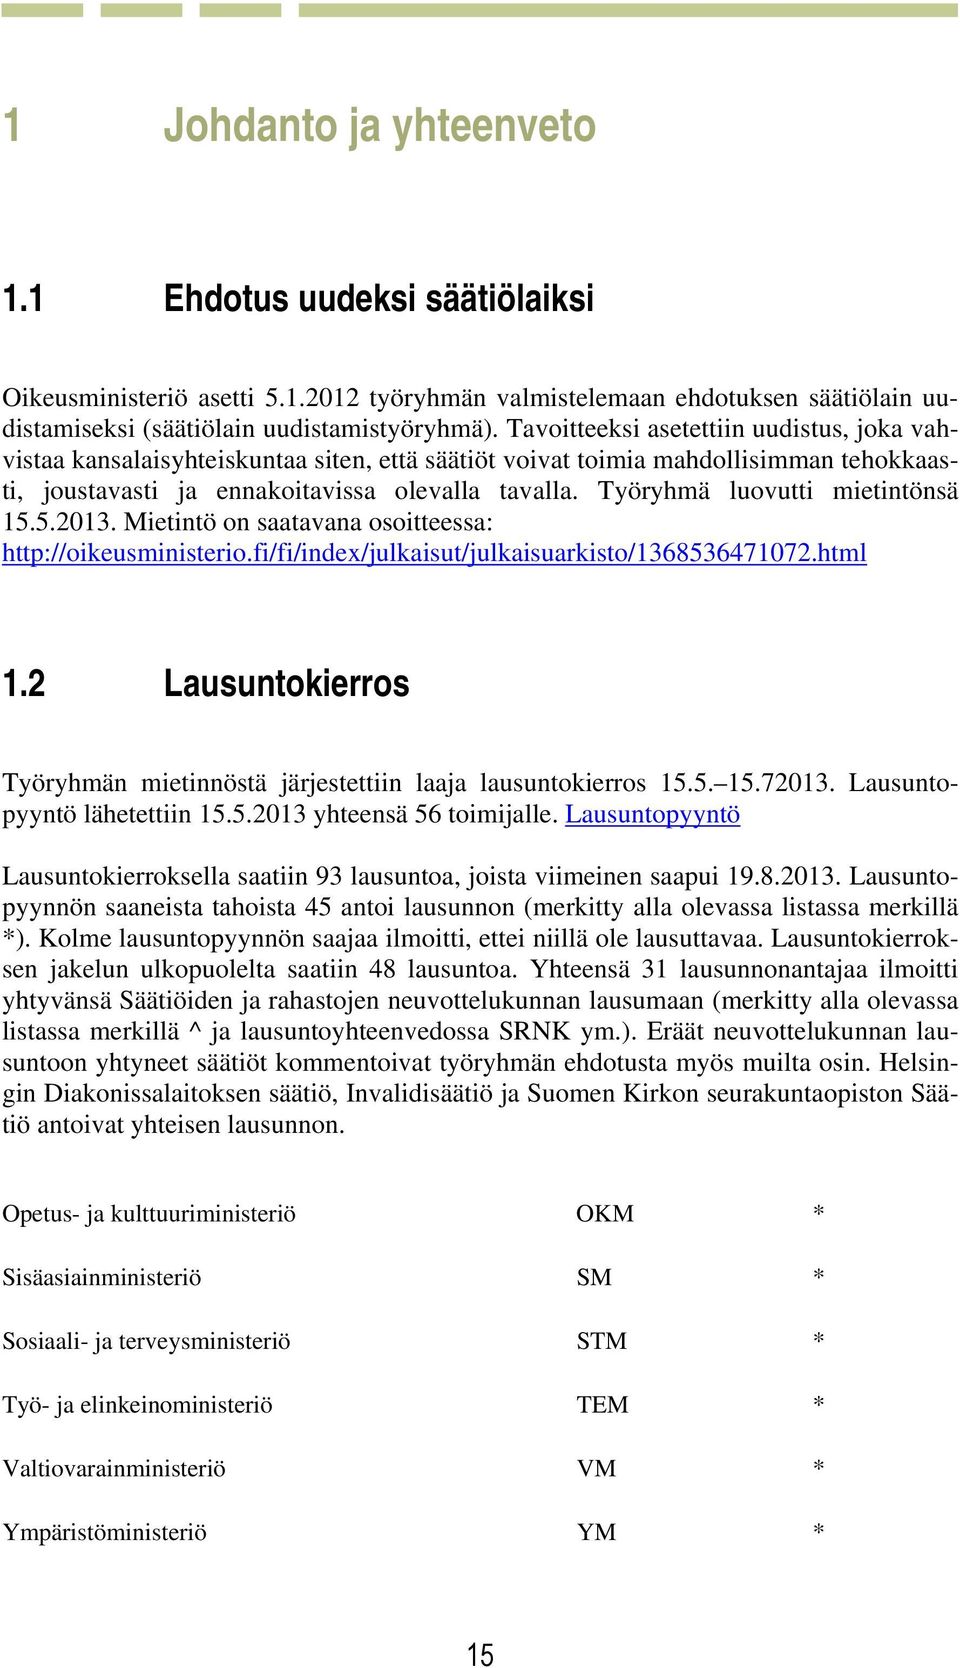 Työryhmä luovutti mietintönsä 15.5.2013. Mietintö on saatavana osoitteessa: http://oikeusministerio.fi/fi/index/julkaisut/julkaisuarkisto/1368536471072.html 1.